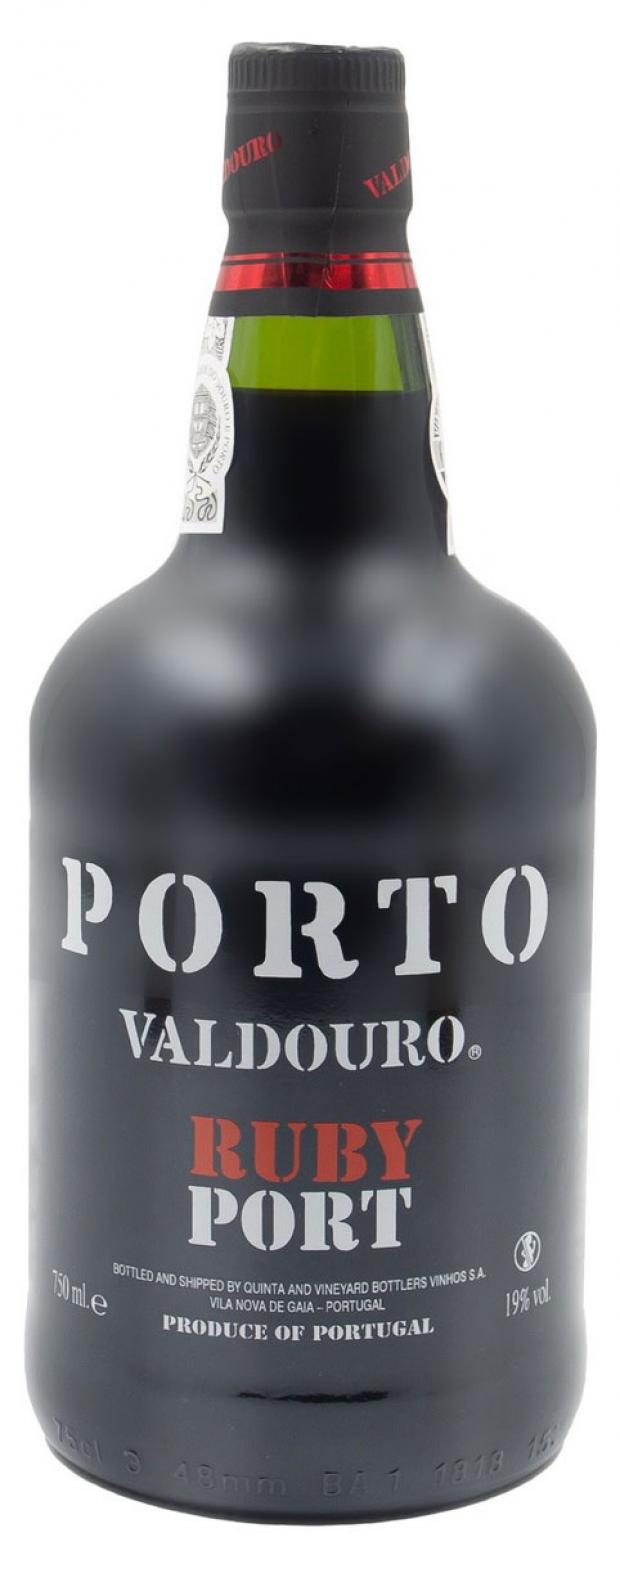 Портвейн Valdouro Ruby Porto, 0.75 л. Вино "Порто Вальдоуру Тоуни" 0,75 красное ликерное. Портвейн Porto Valdouro Tawny Port красный ликерный 0,75л. Вино "Порто Вальдоуру Руби" 0,75 (портвейн) красное ликерное. Руби порт